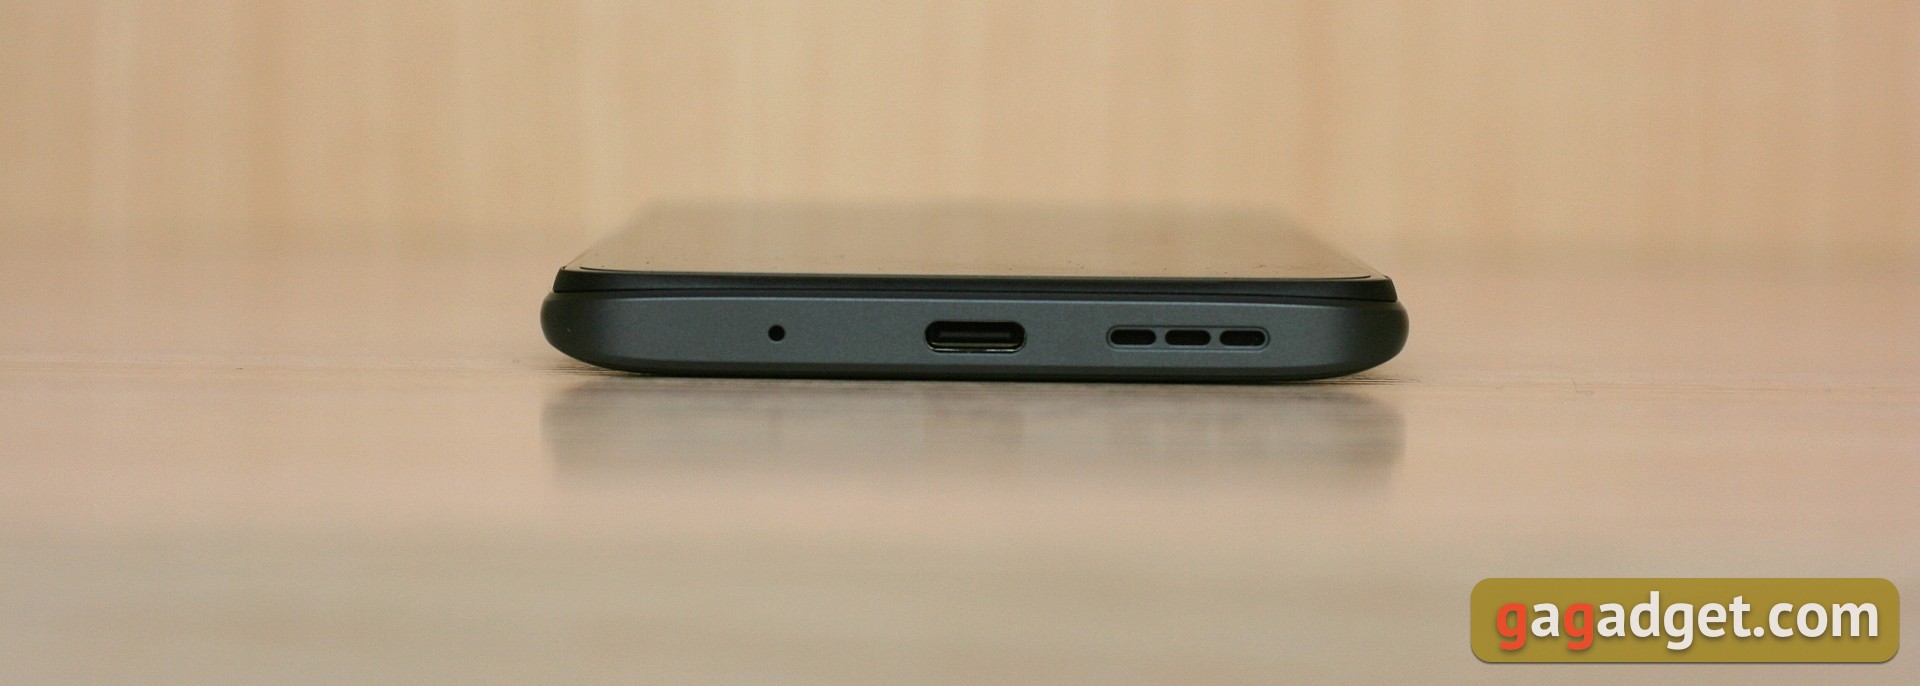 El diseño del Xiaomi Redmi 10 queda al descubierto junto a su enorme cámara  de 50 megapíxeles